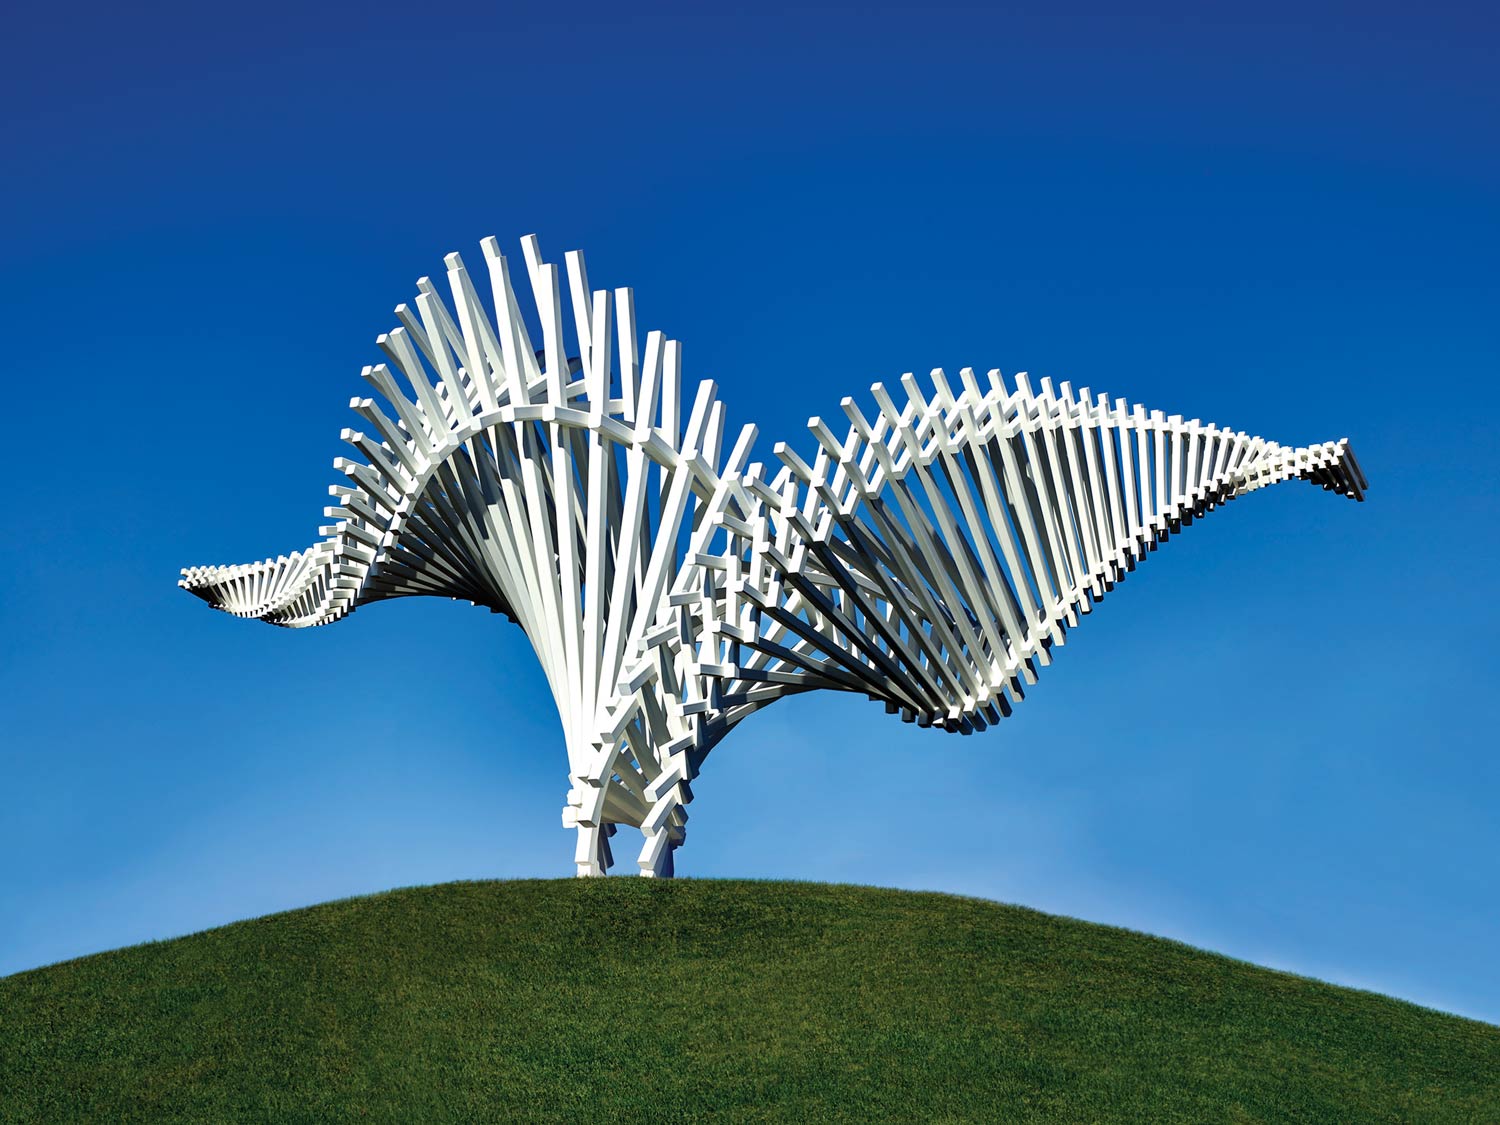 Gerry Judha's sculpture, "Drift"